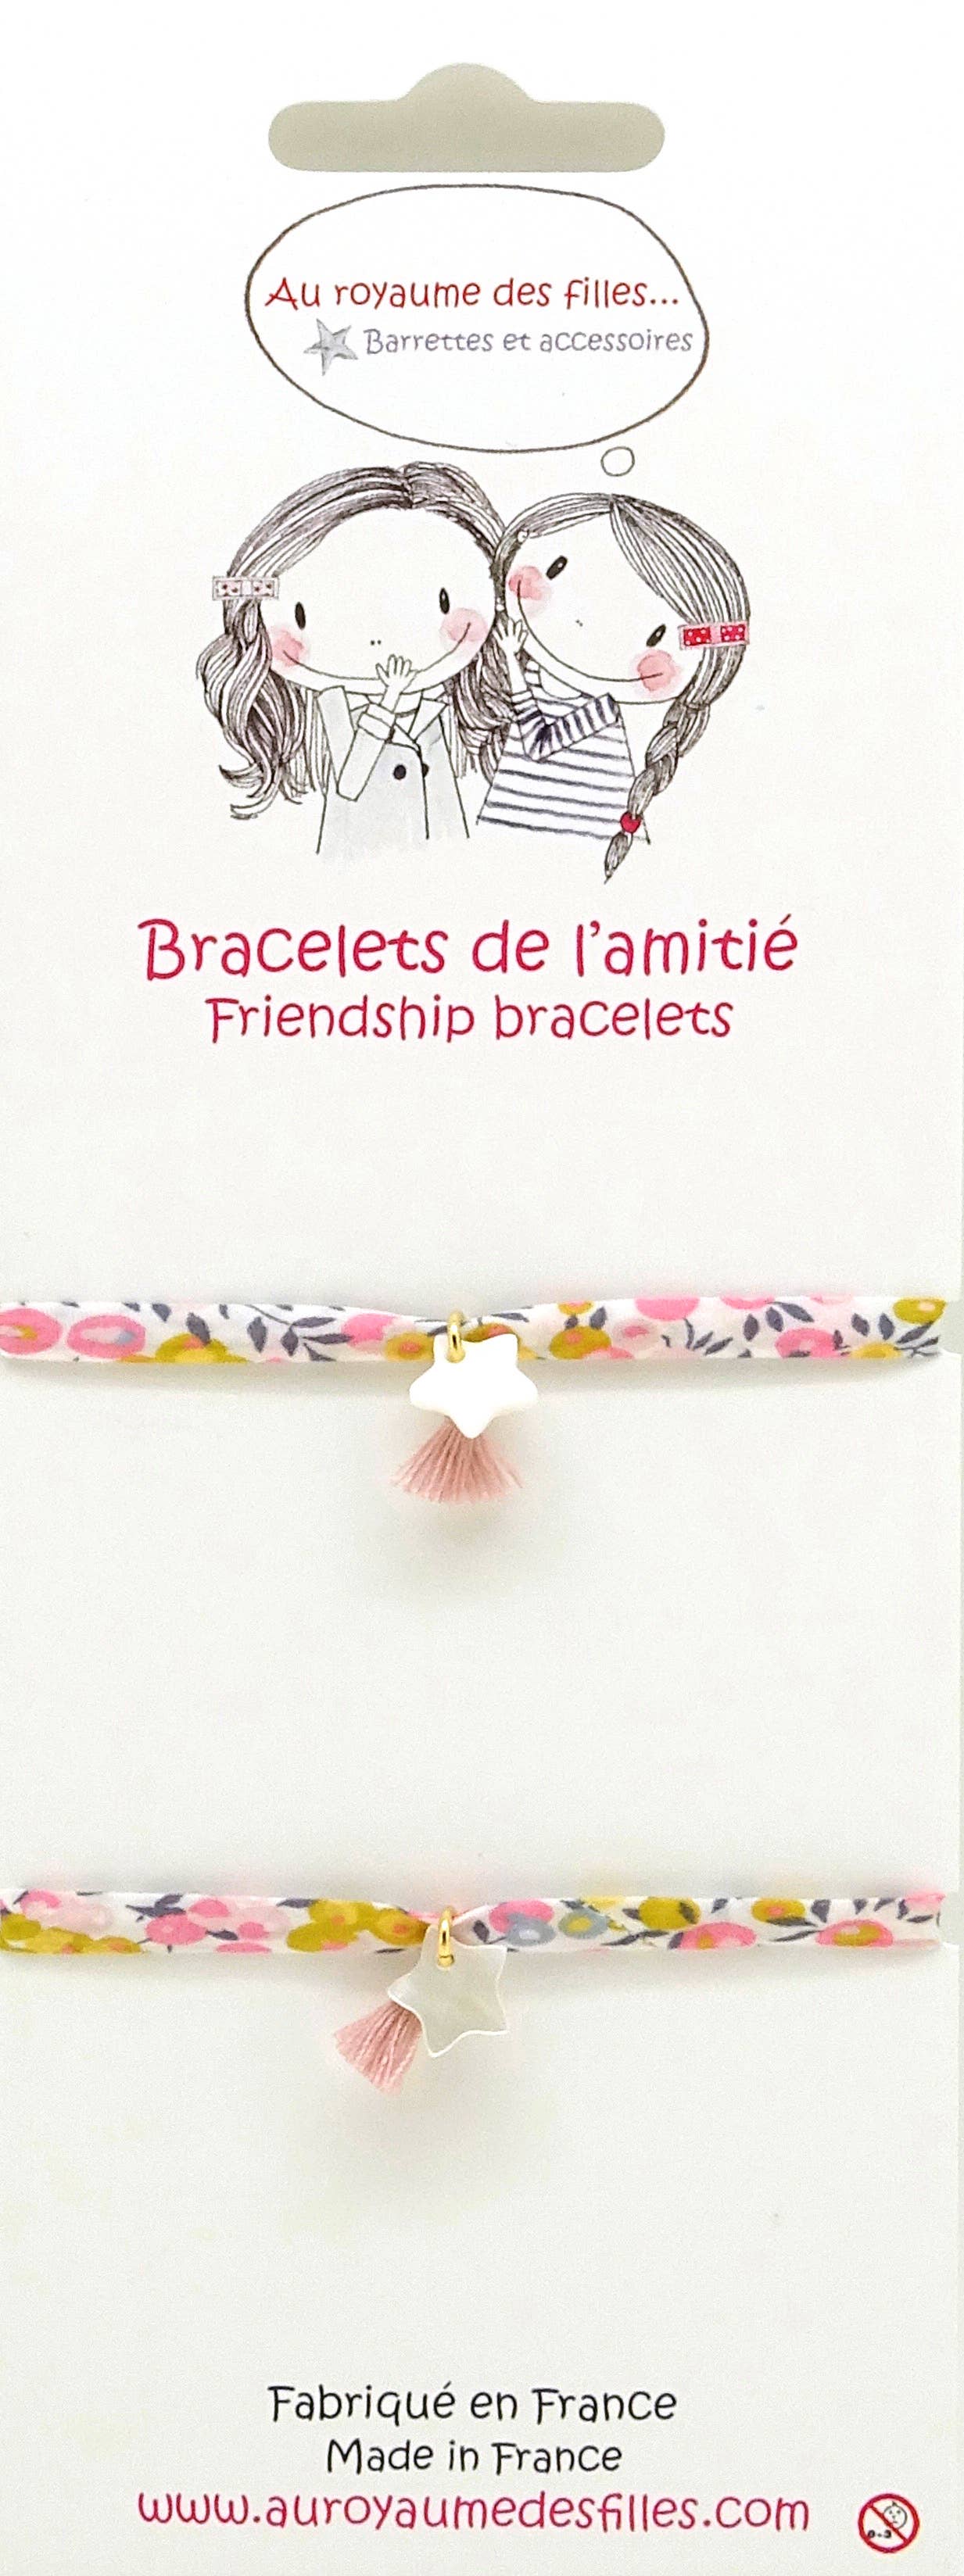 Bracelets de l'amitié